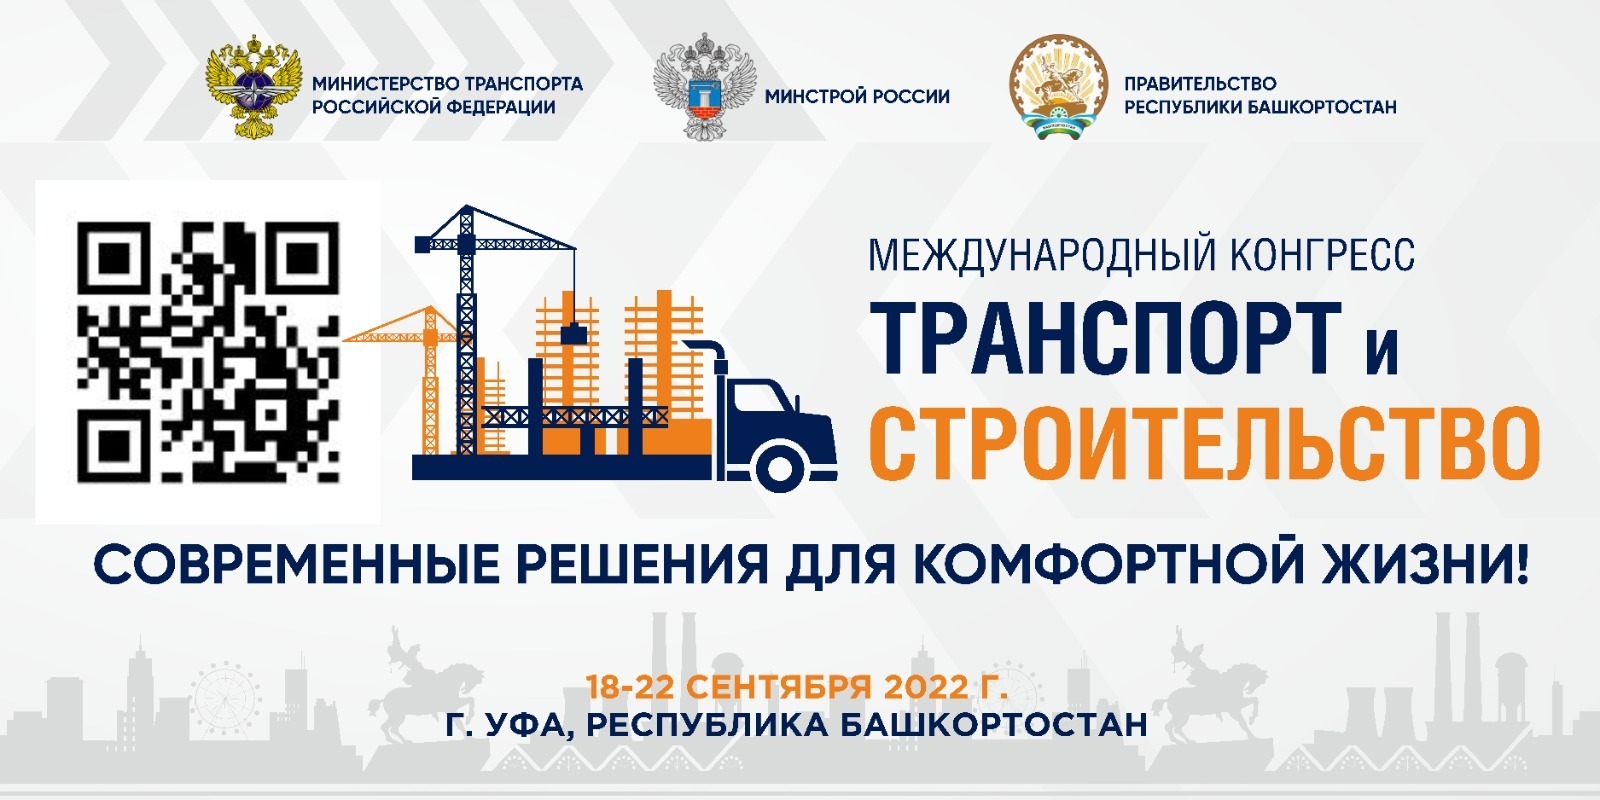 В Уфе на конгрессе «Транспорт и строительство» рассказали о дорожных перспективах Башкирии